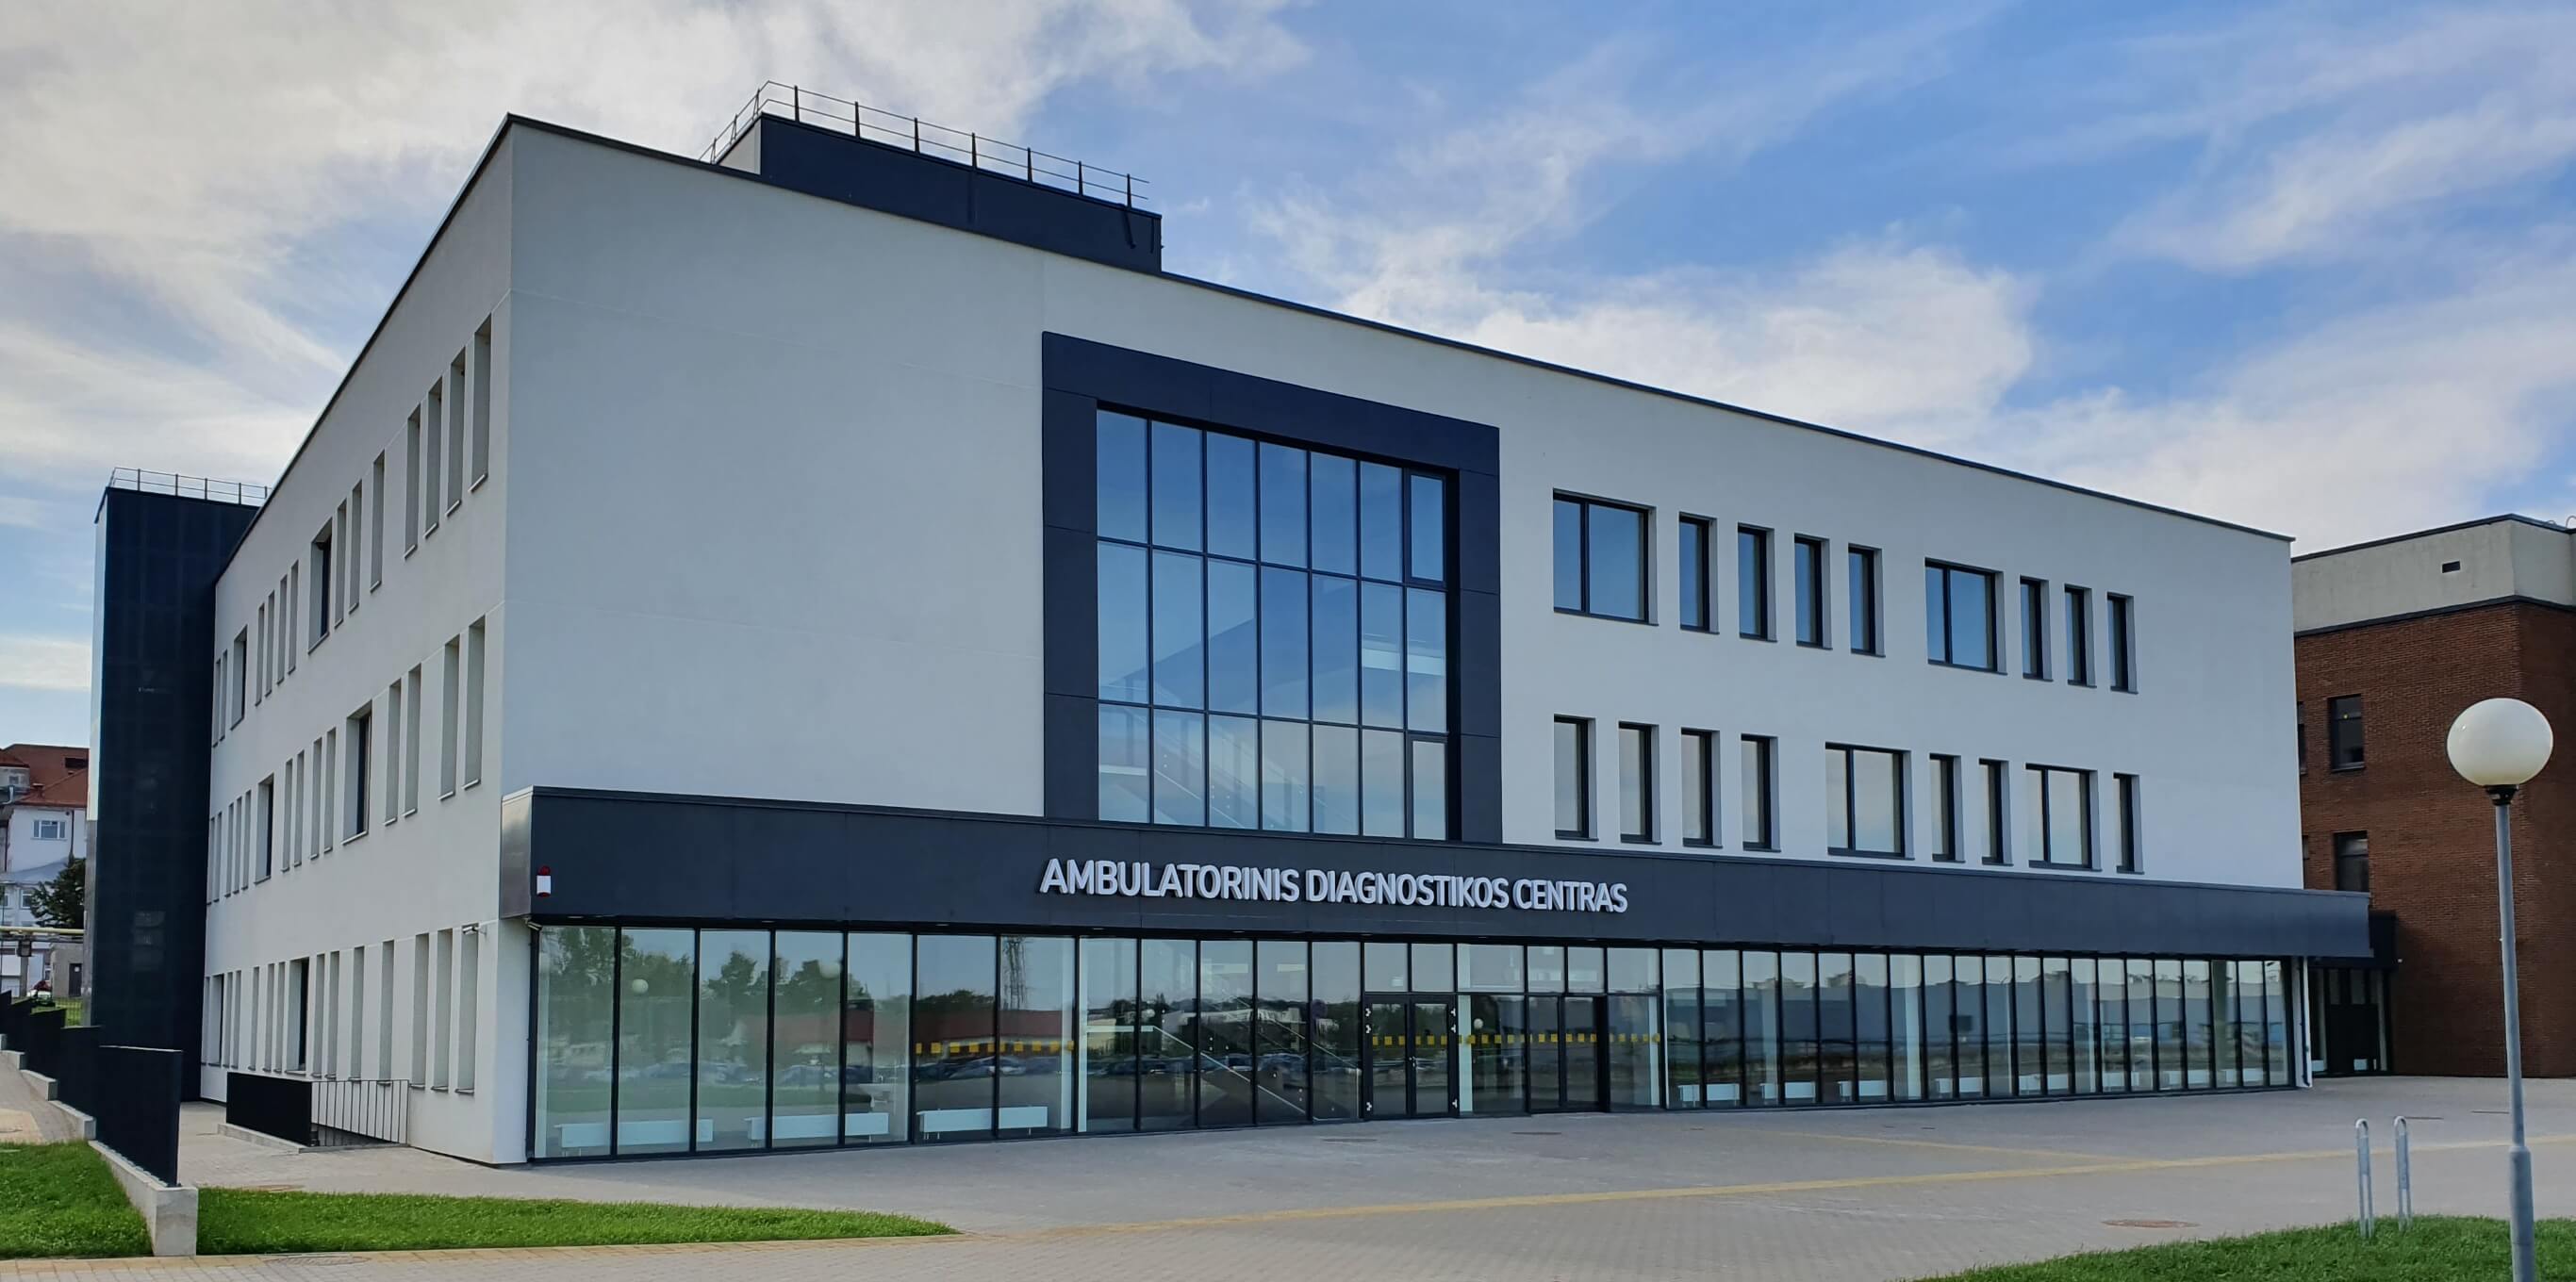 Kauno klinikų ambulatorinio diagnostikos centro statyba